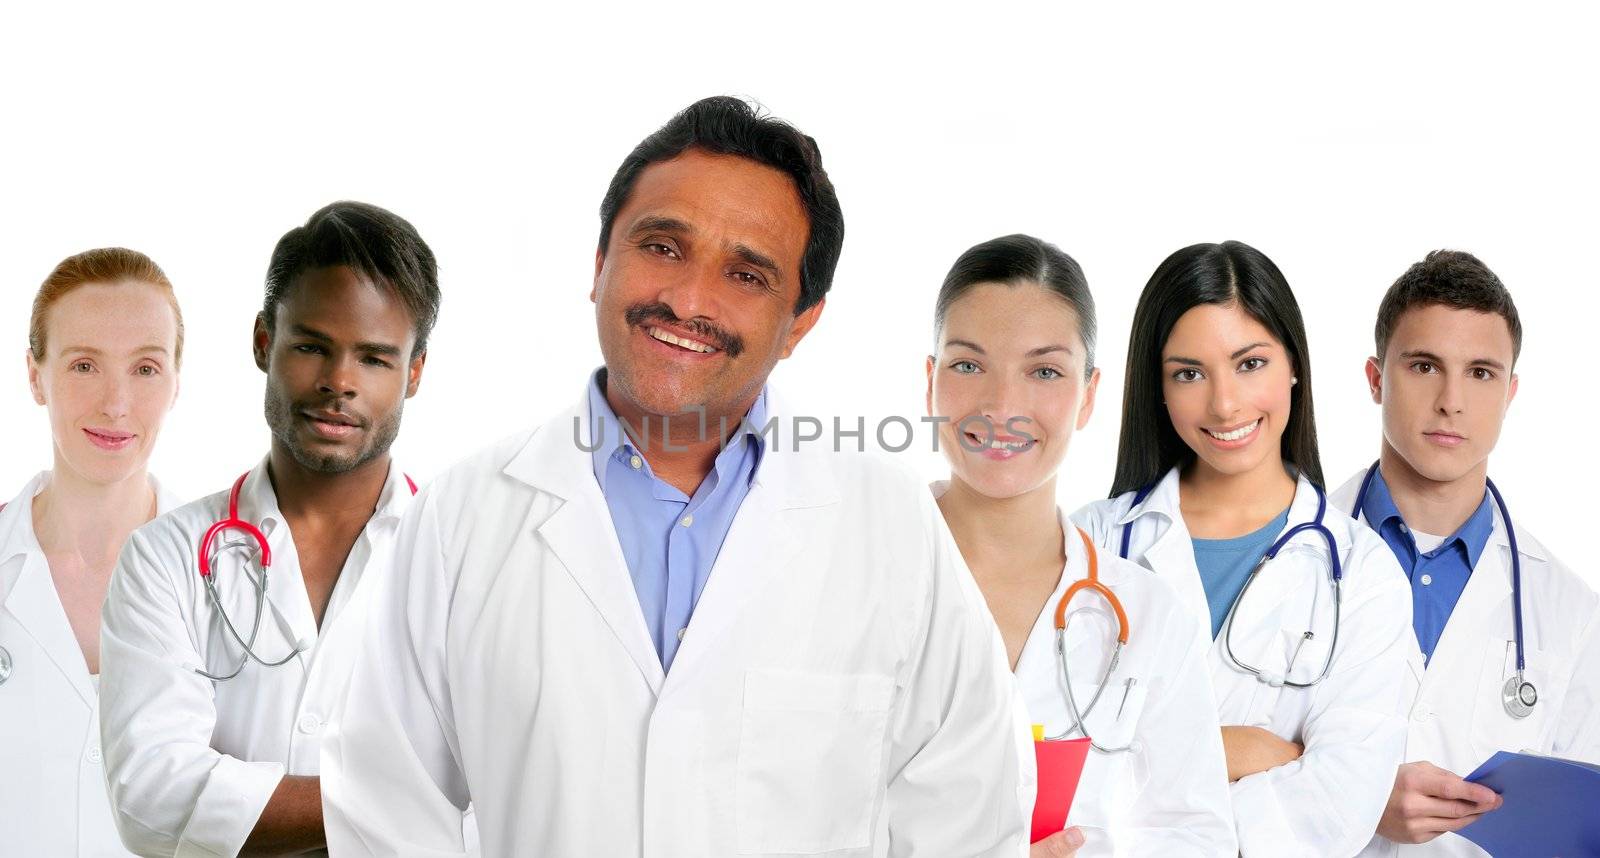 Indian latin expertise doctor multi ethnic doctors by lunamarina